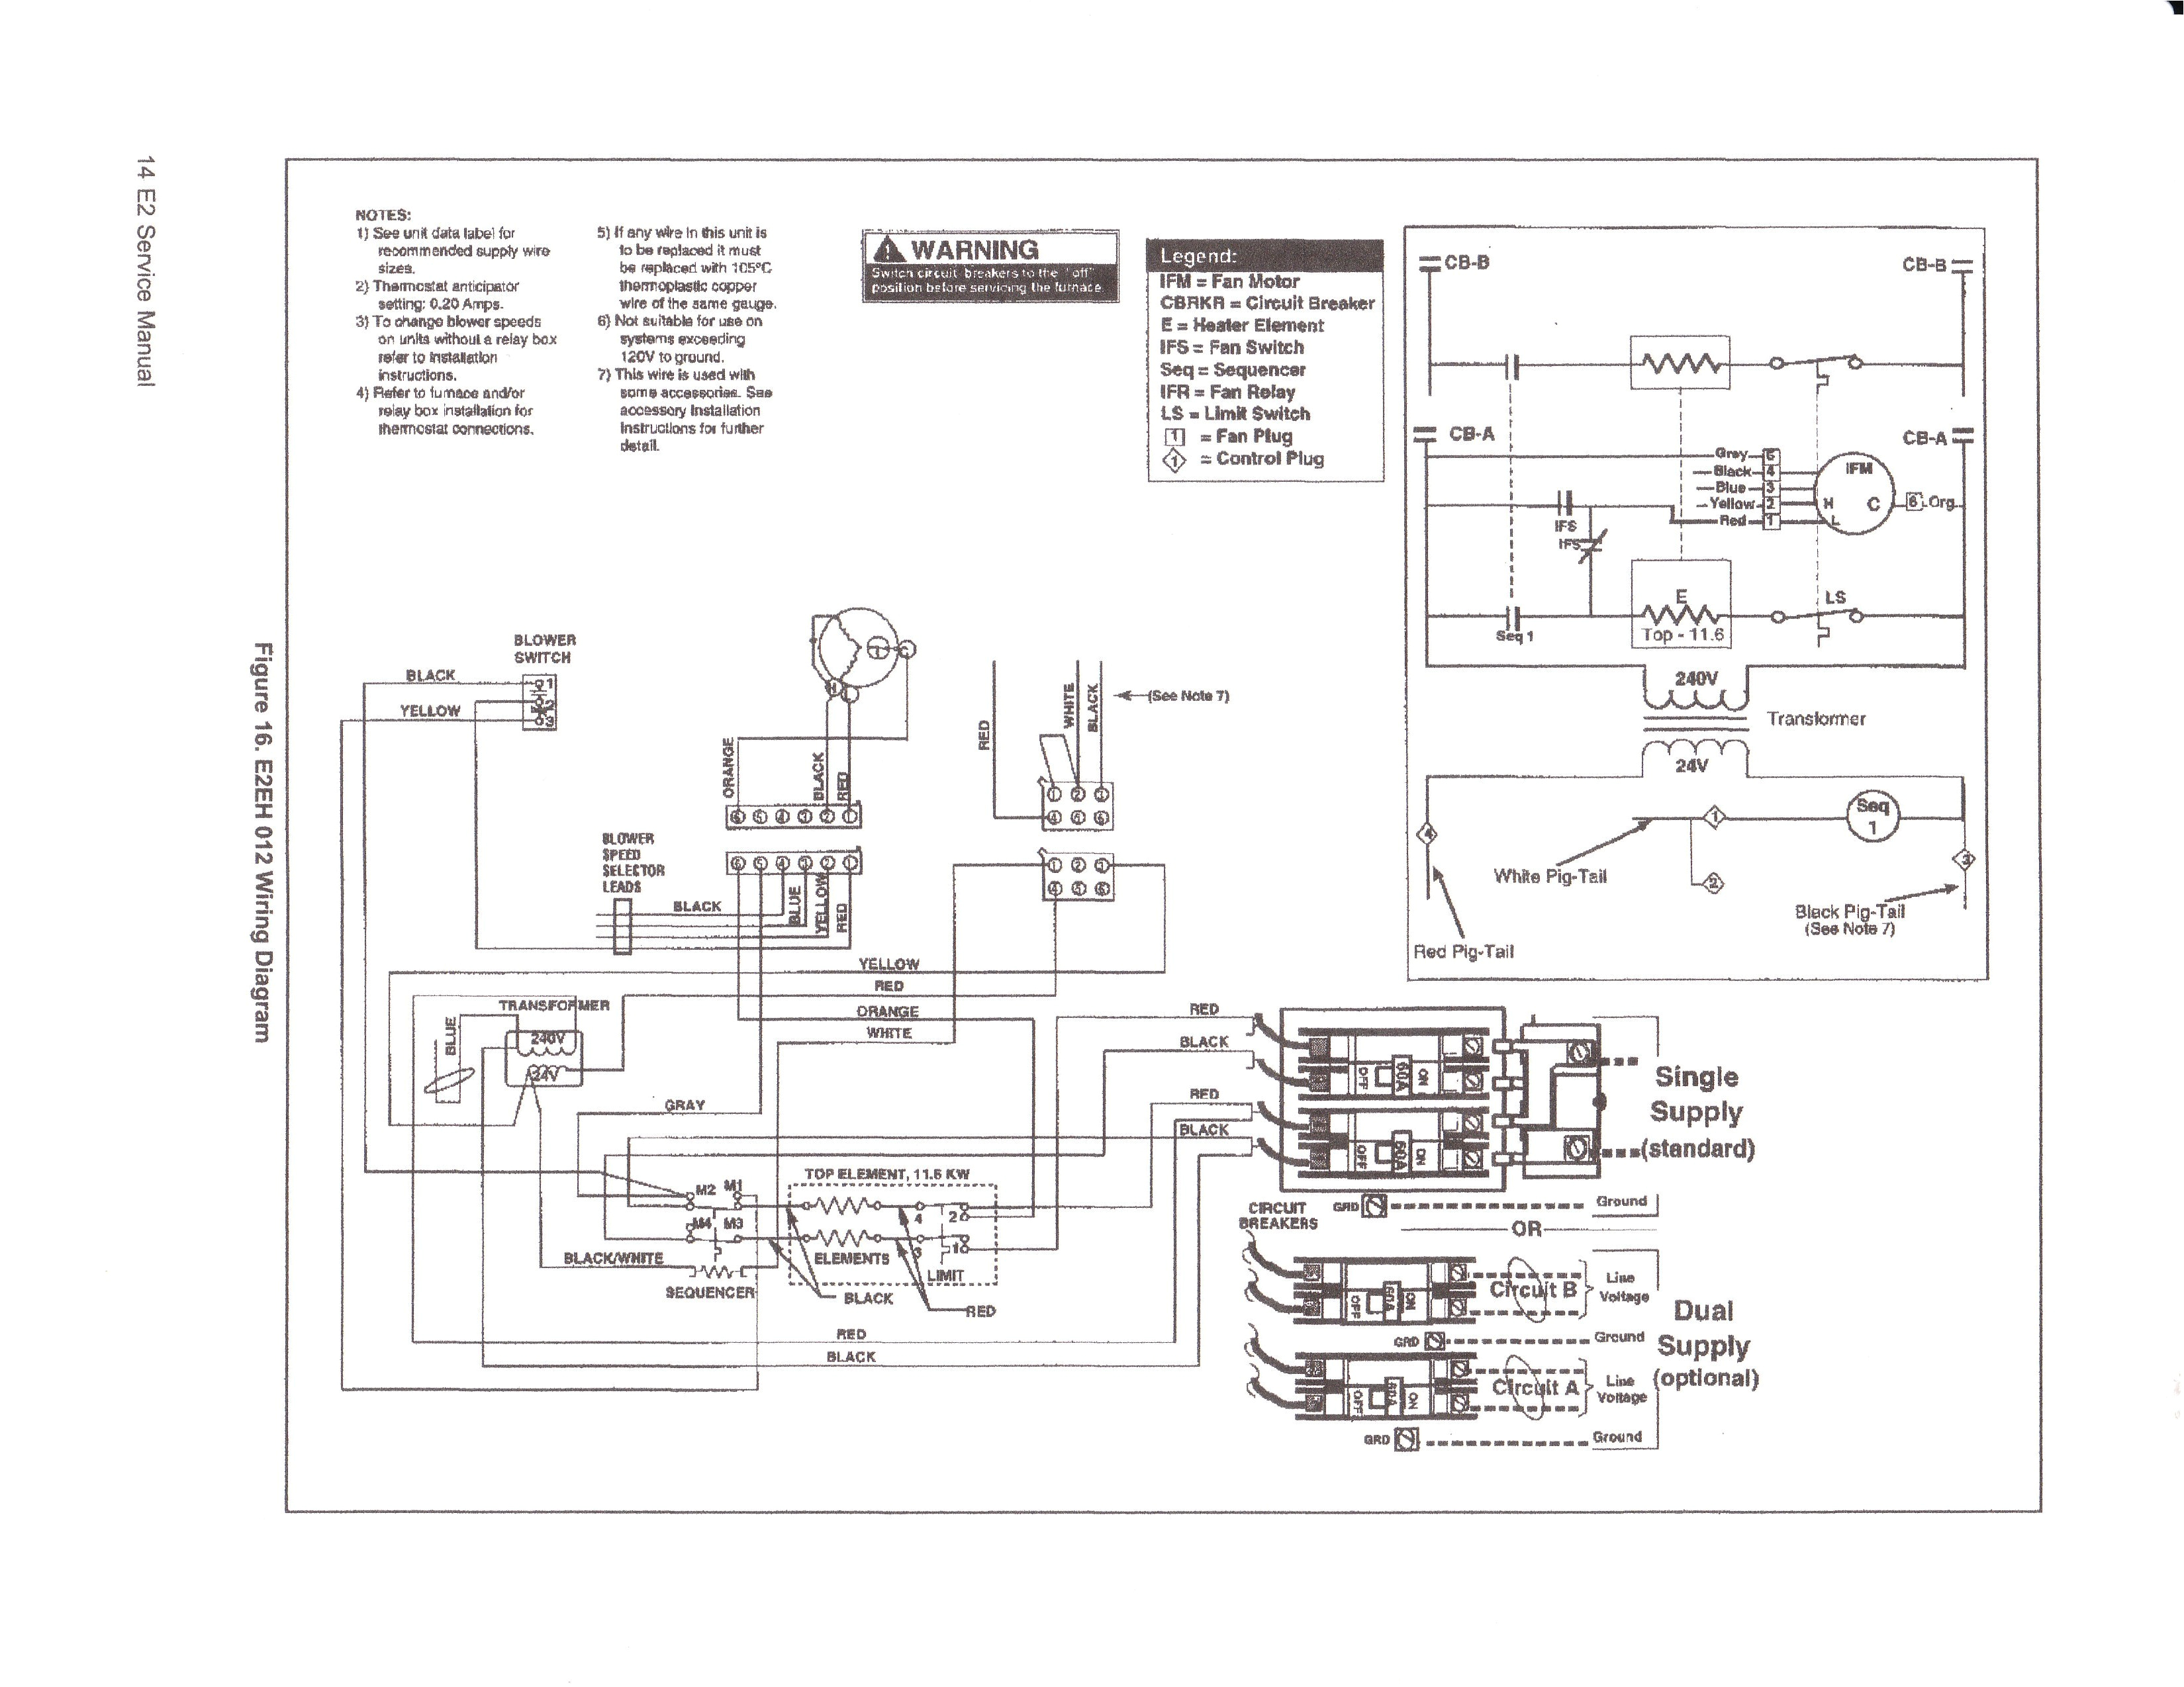 ducane electric furnace wiring diagram wiring diagram host ducane electric furnace wiring diagram